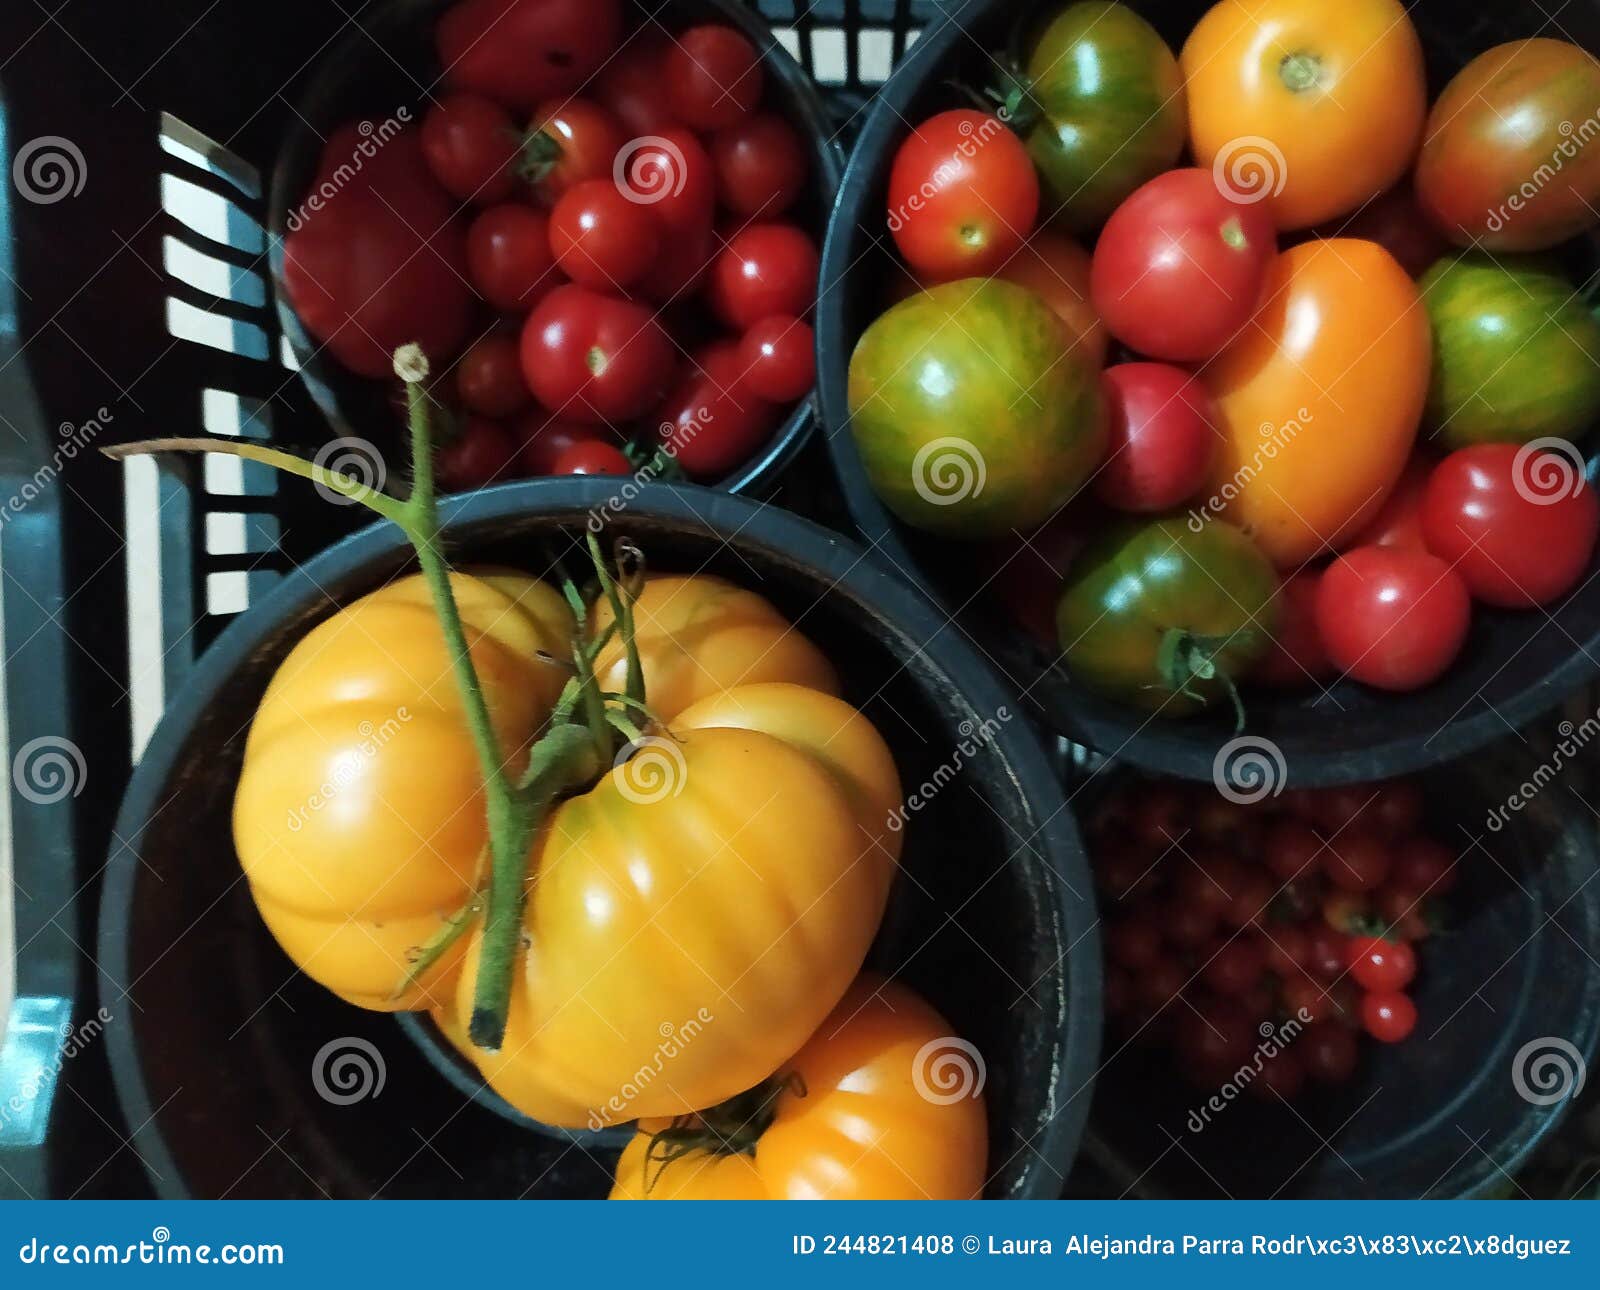 different types of tomatoes in a plastic basket. diferentes tipos de tomates en una cesta de plÃÂ¡stico